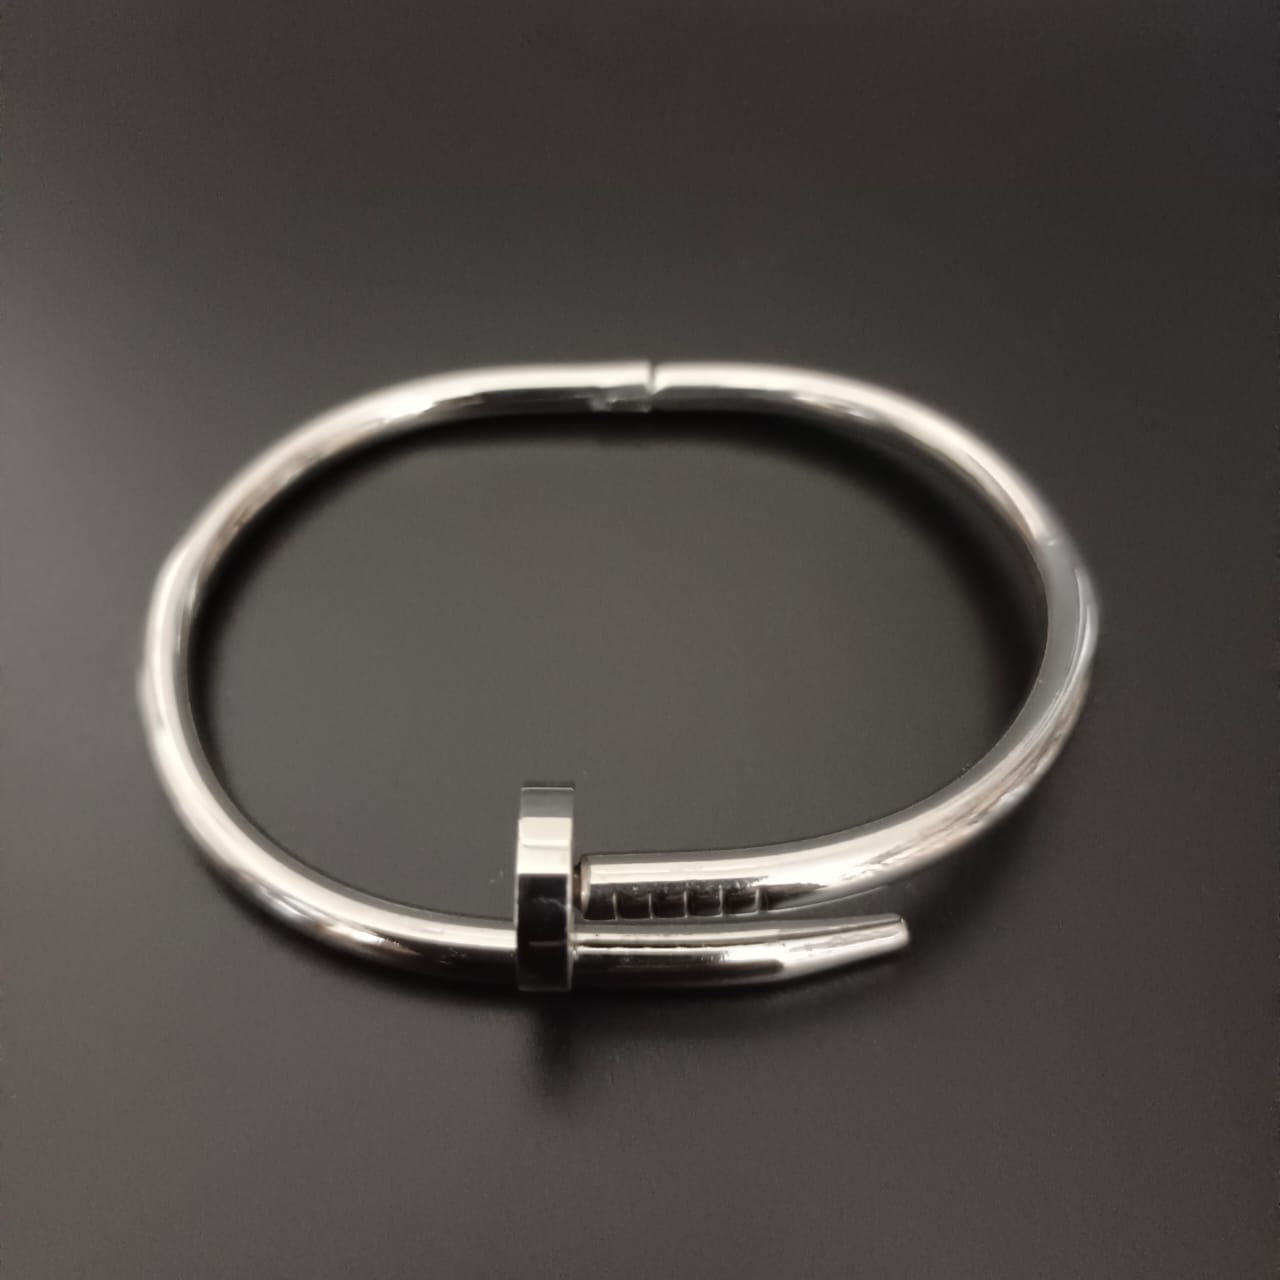 New Nail Design silver Kada Bracelet For Women and Girl